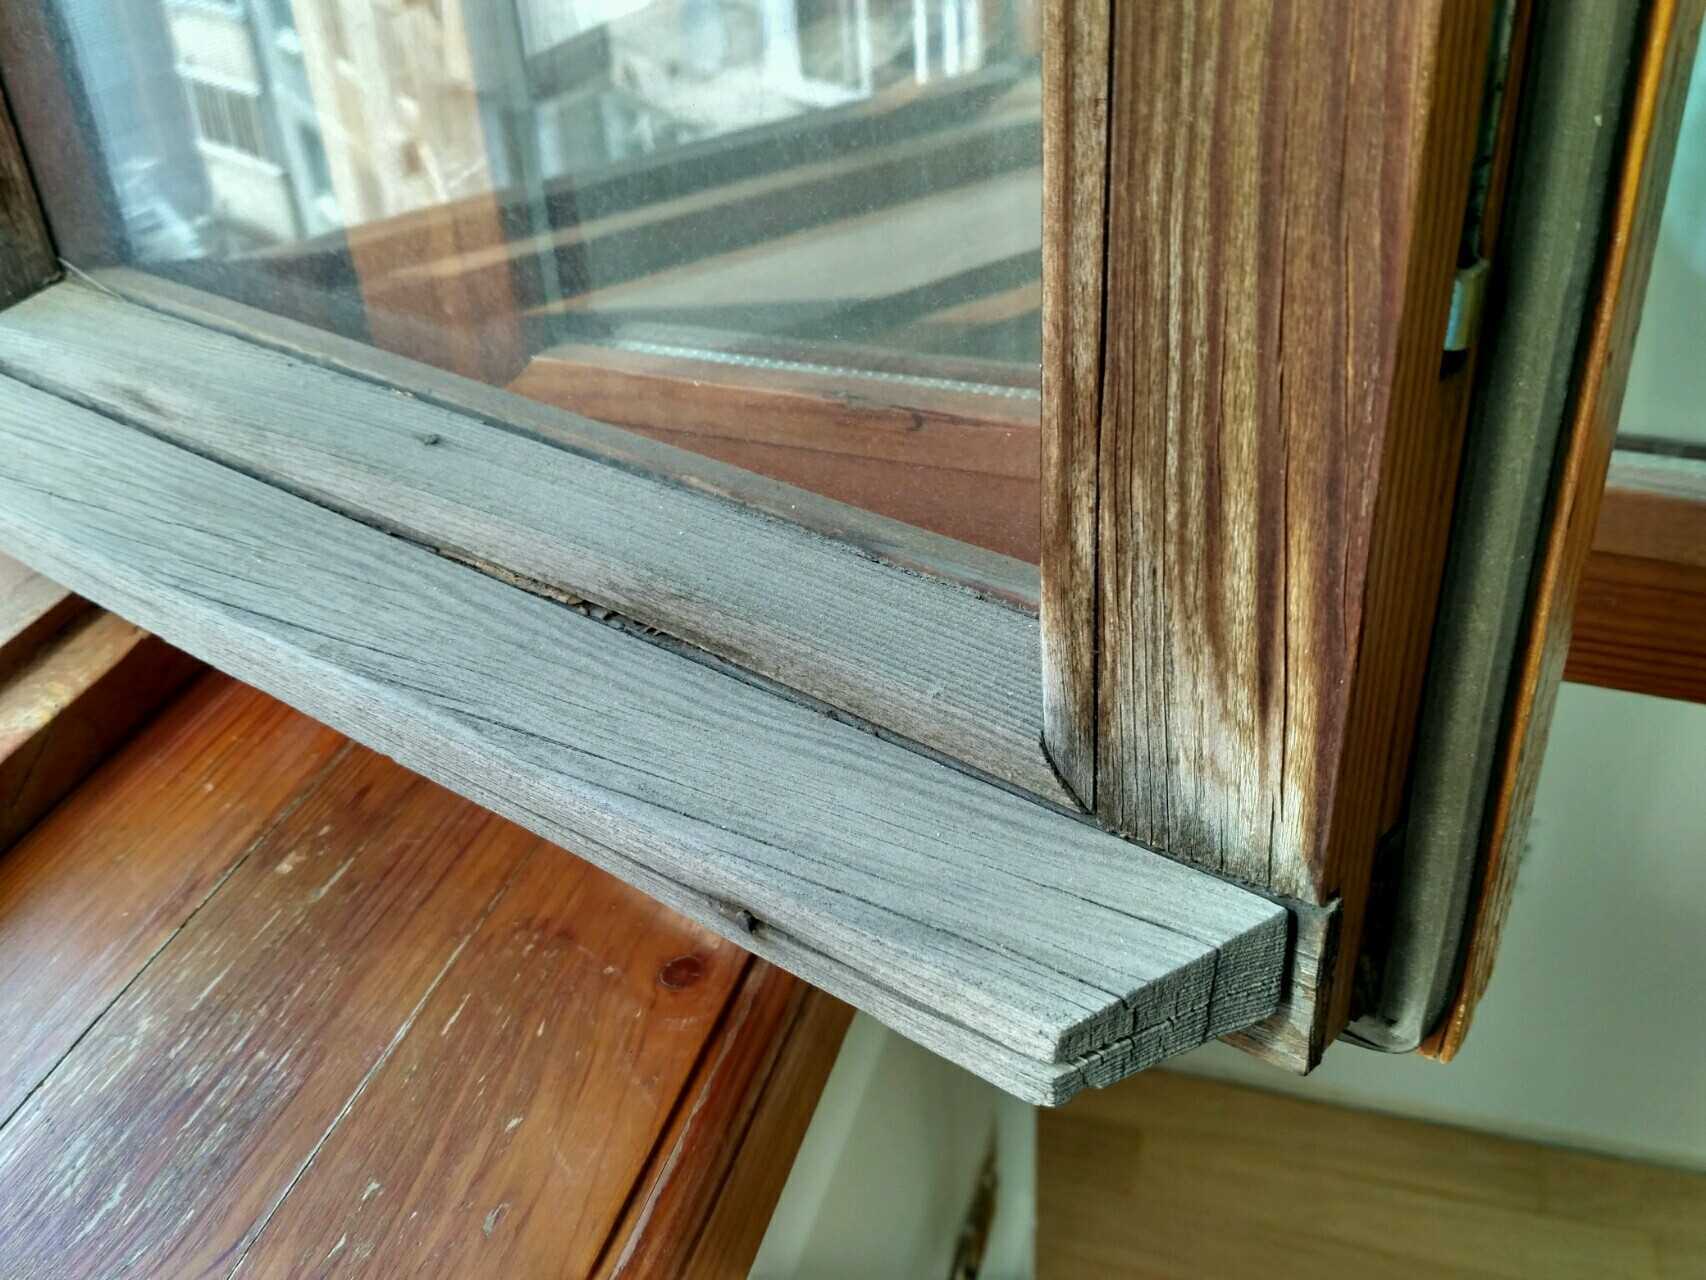 Как красить окна деревянные с облупленной краской